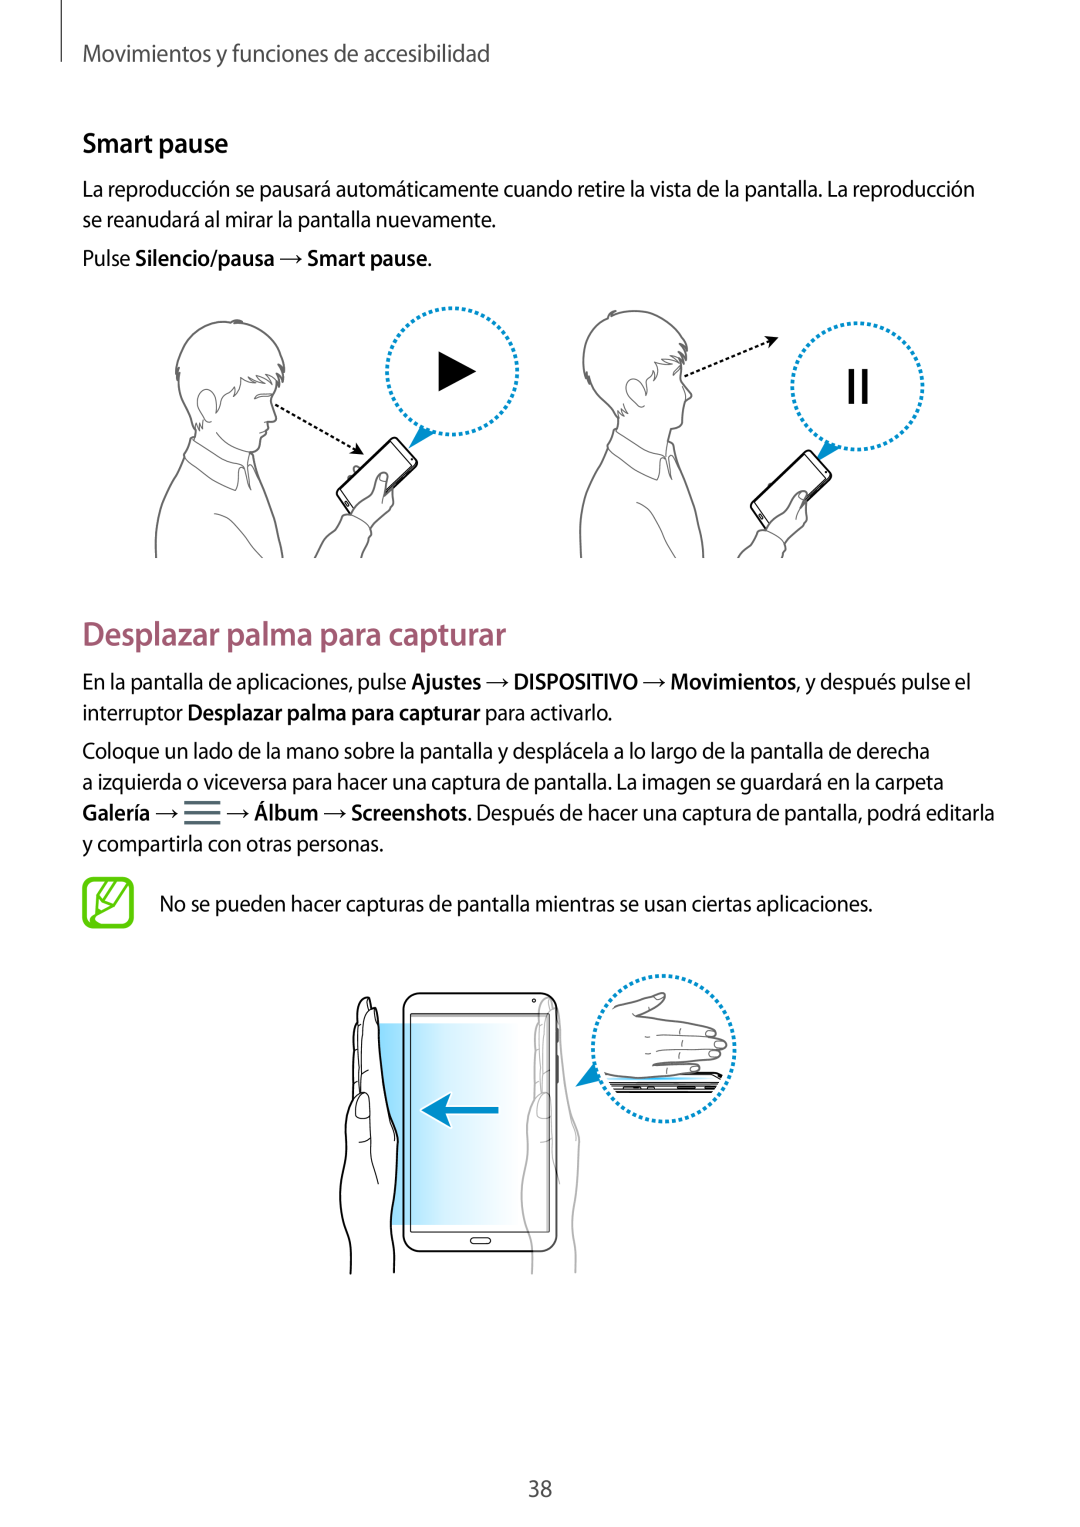 Samsung SM-T700NZWAPHE manual Desplazar palma para capturar, Smart pause, Movimientos y funciones de accesibilidad 